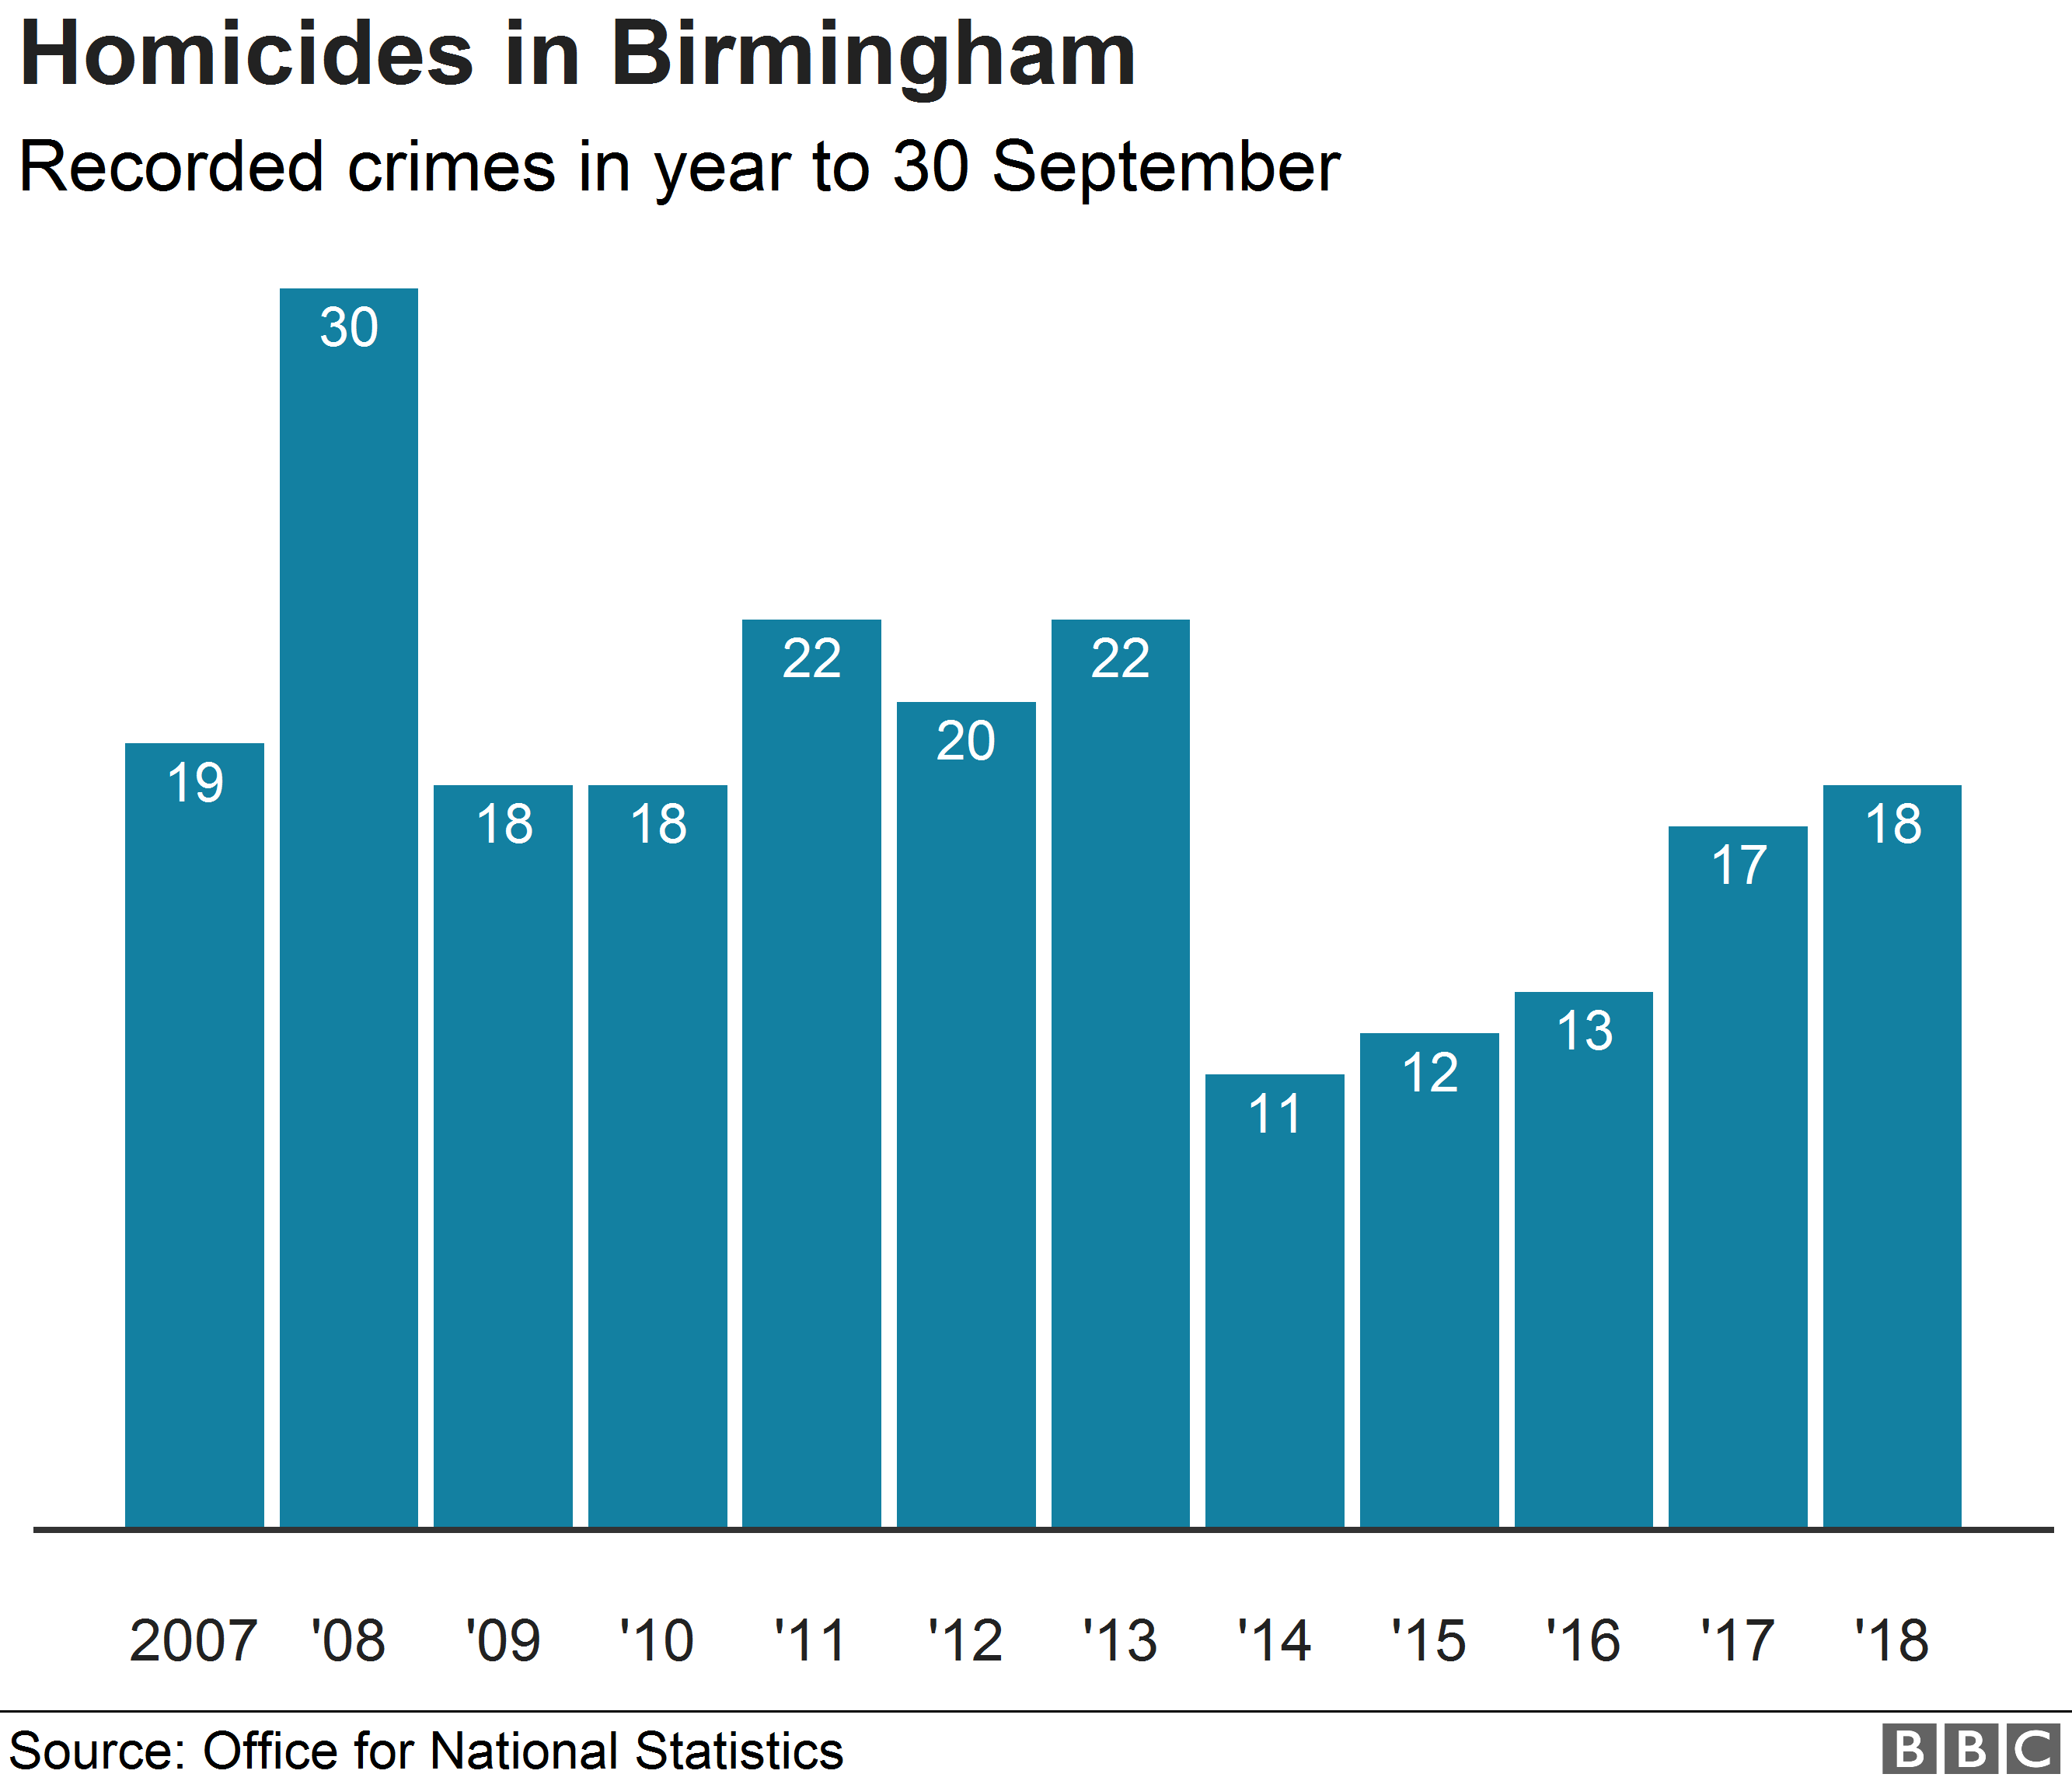 Chart showing homicide figures for Birmingham